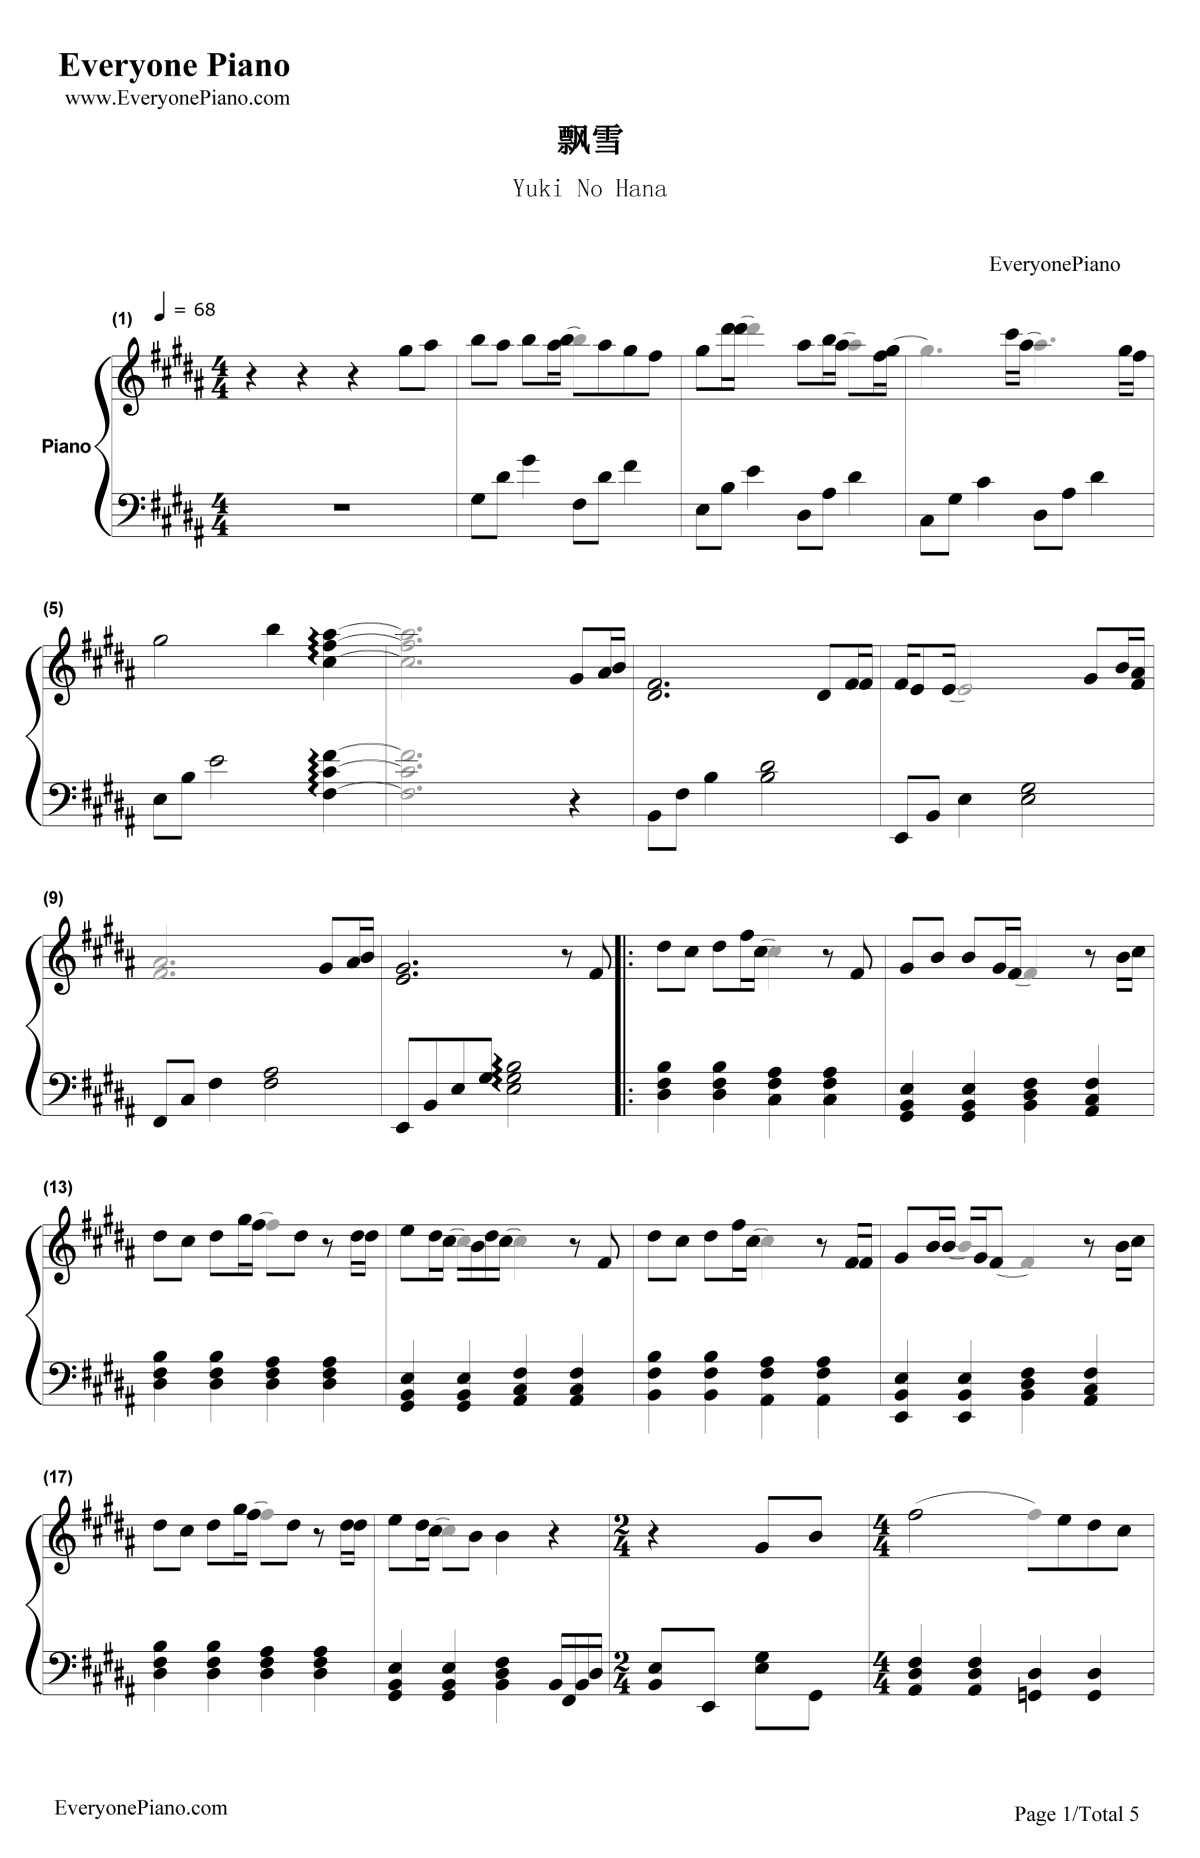 简单版飘雪弹唱版钢琴谱 - 韩雪0基础完整版钢琴伴奏 - 柱式分解和弦伴奏 - 易谱库